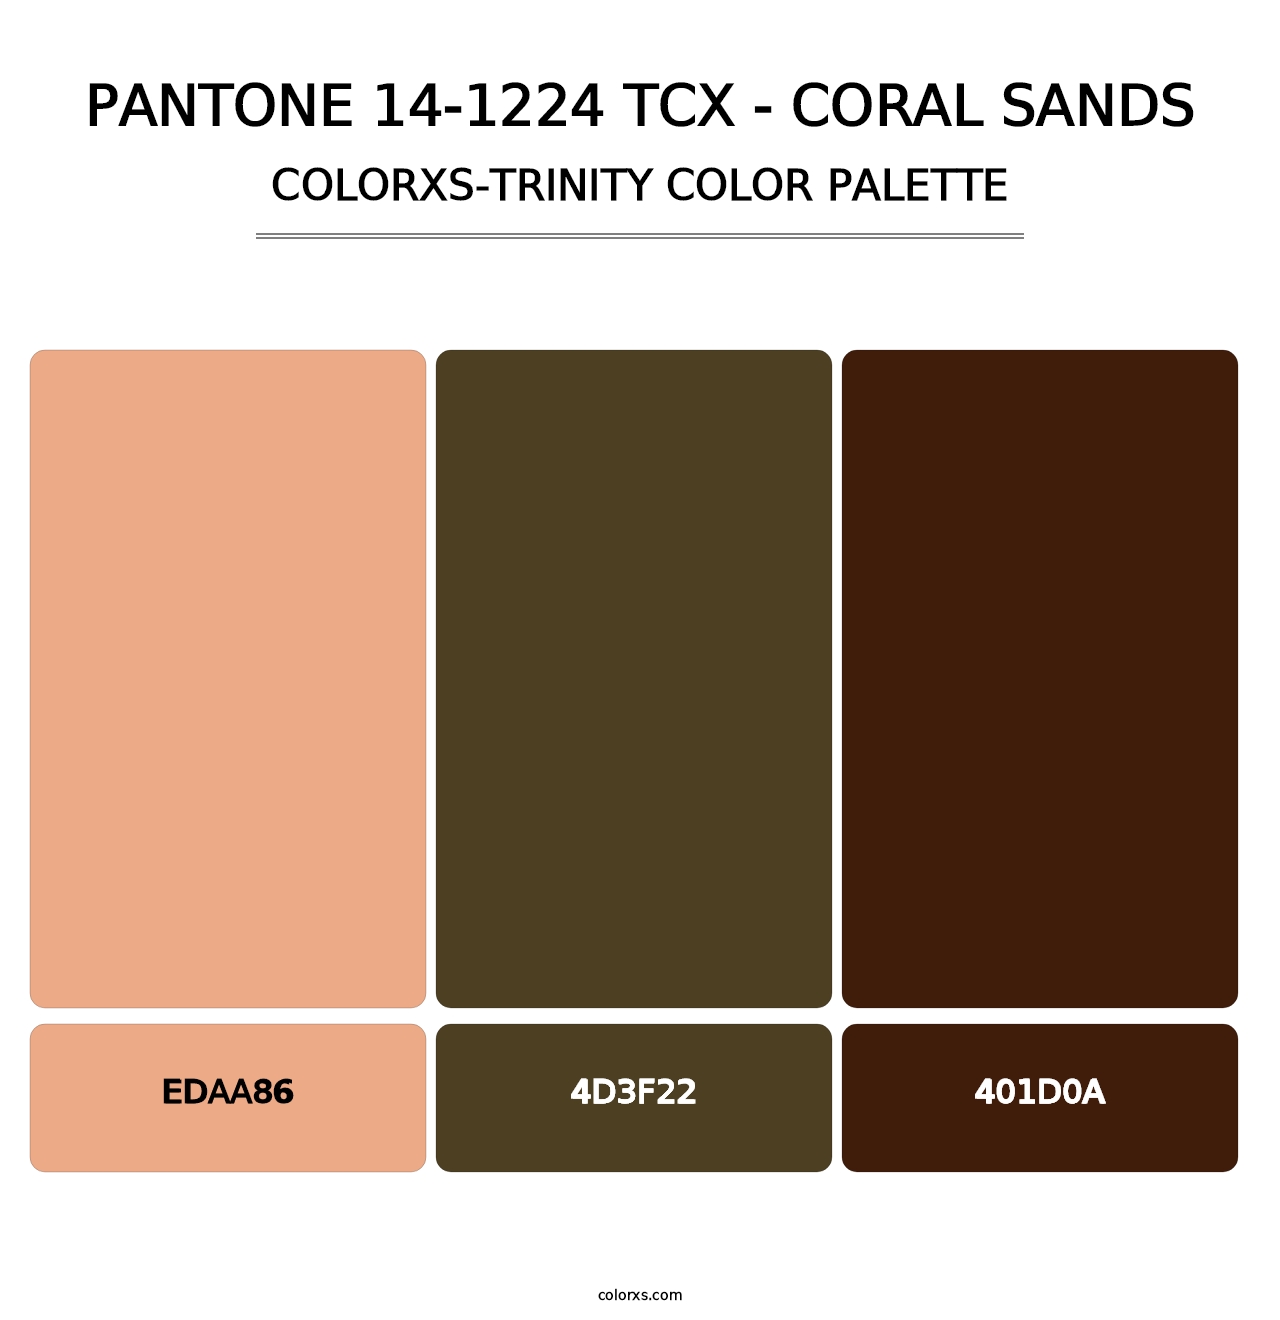 PANTONE 14-1224 TCX - Coral Sands - Colorxs Trinity Palette